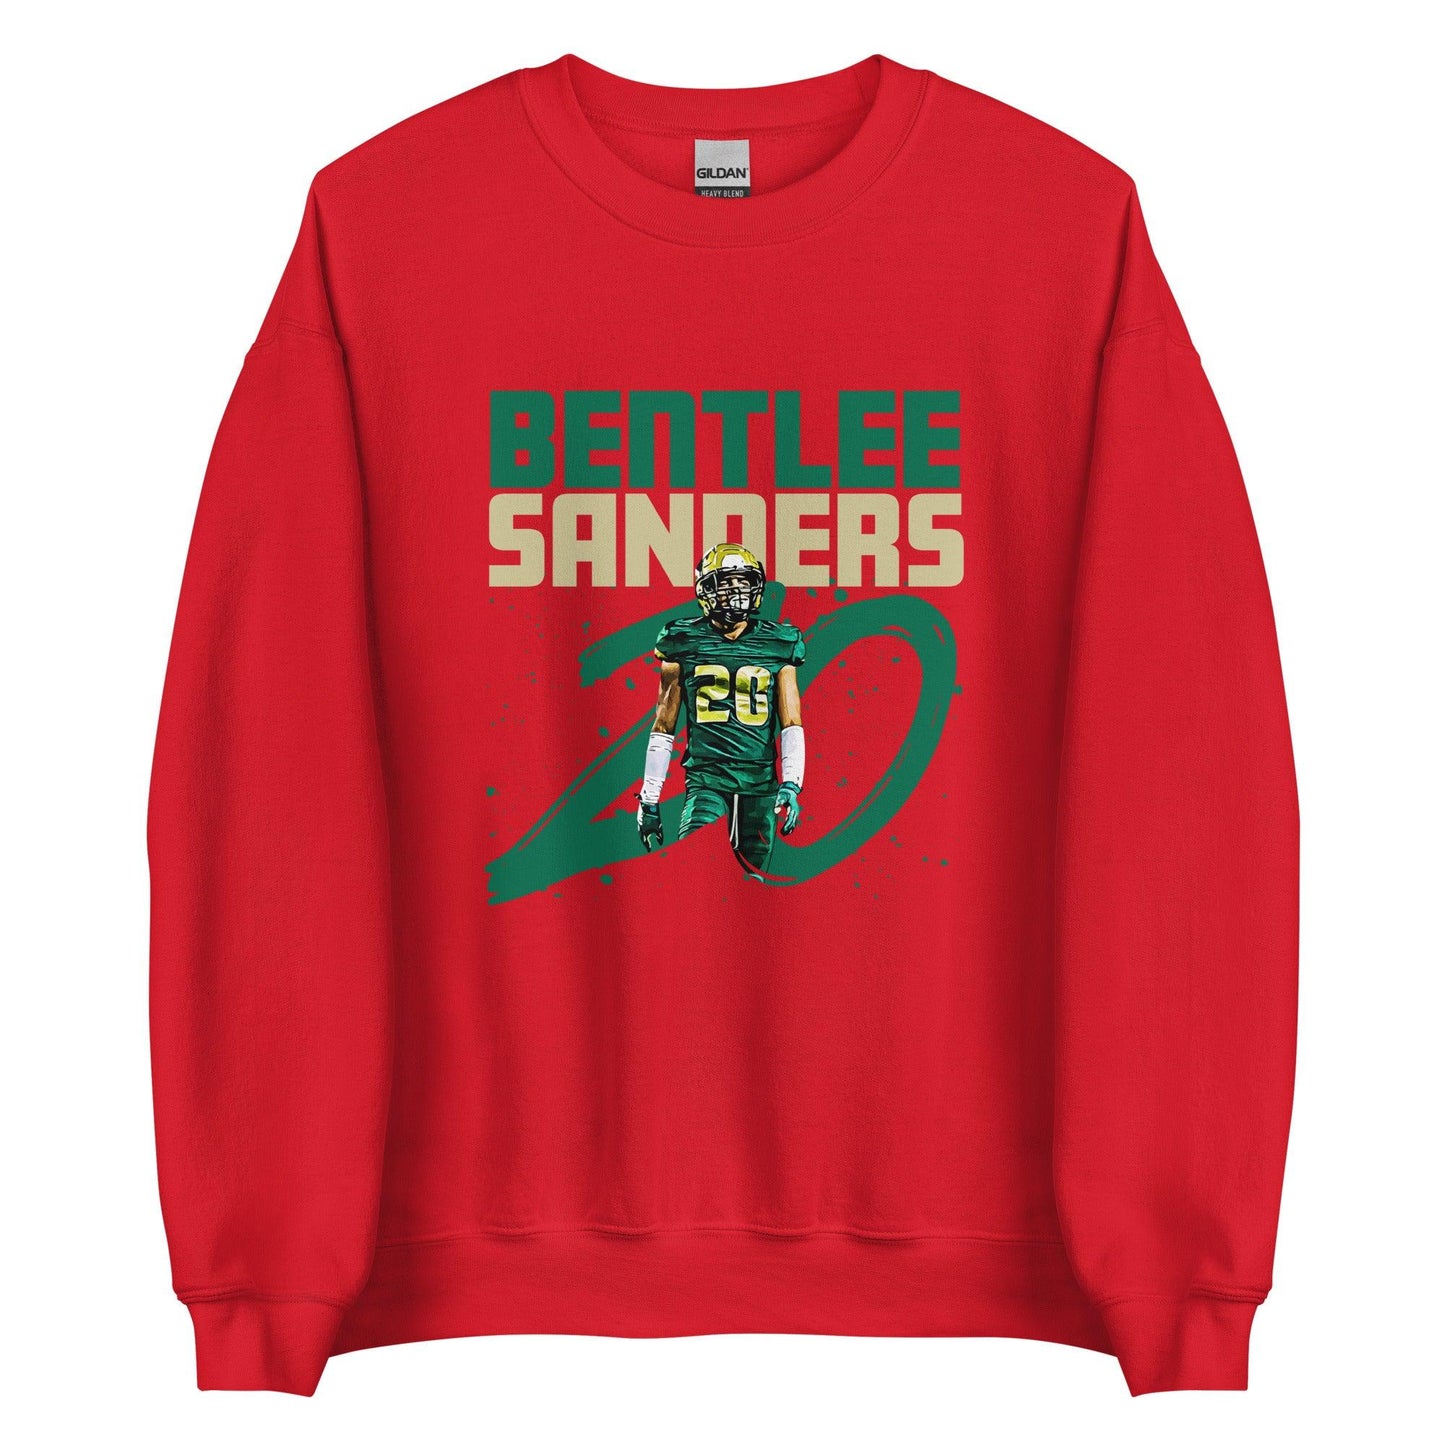 Bentlee Sanders "Gameday" Sweatshirt - Fan Arch